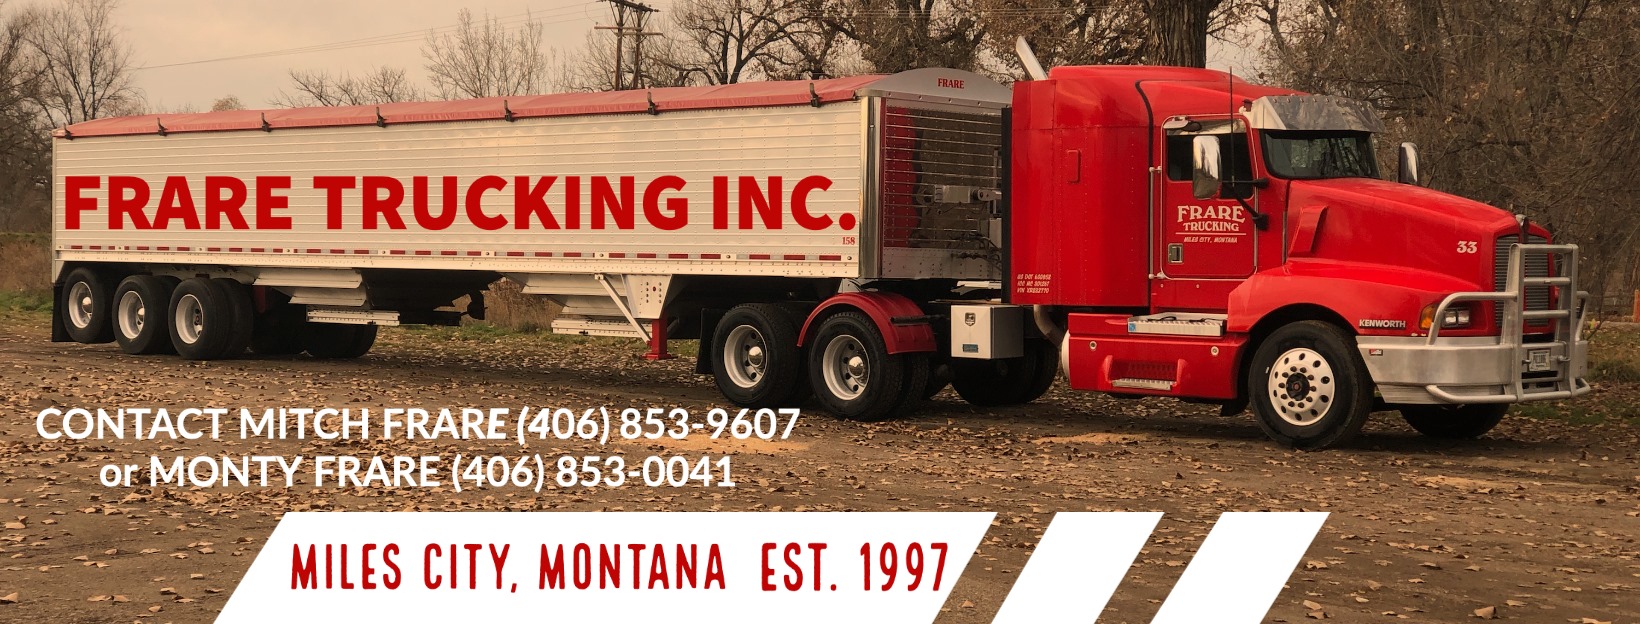 Frare Trucking 103 N 1st St, Miles City Montana 59301